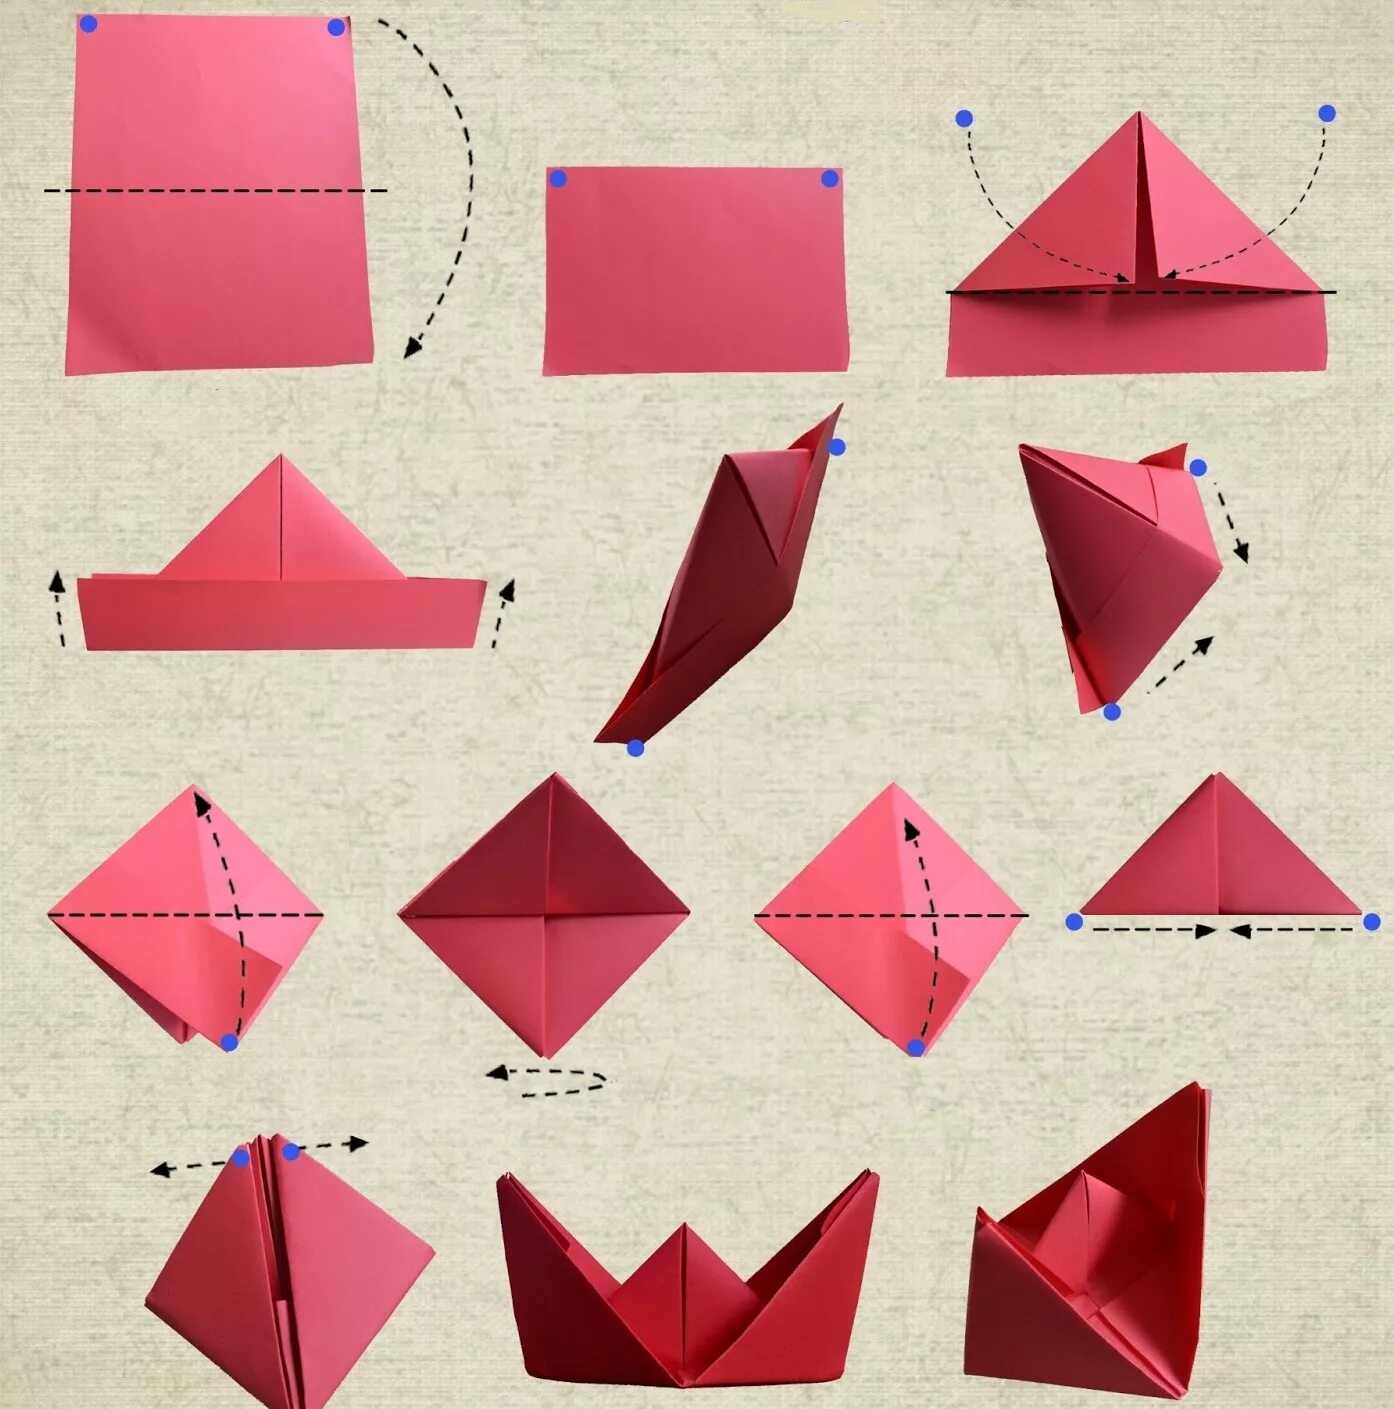 Как сделать кораблик из бумаги фото. Как делать кораблик из бумаги. Оригами из бумаги для начинающих поэтапно кораблик. Бумажный кораблик своими руками пошагово из листа. Как сделать кораблик из а4 из бумаги своими руками.